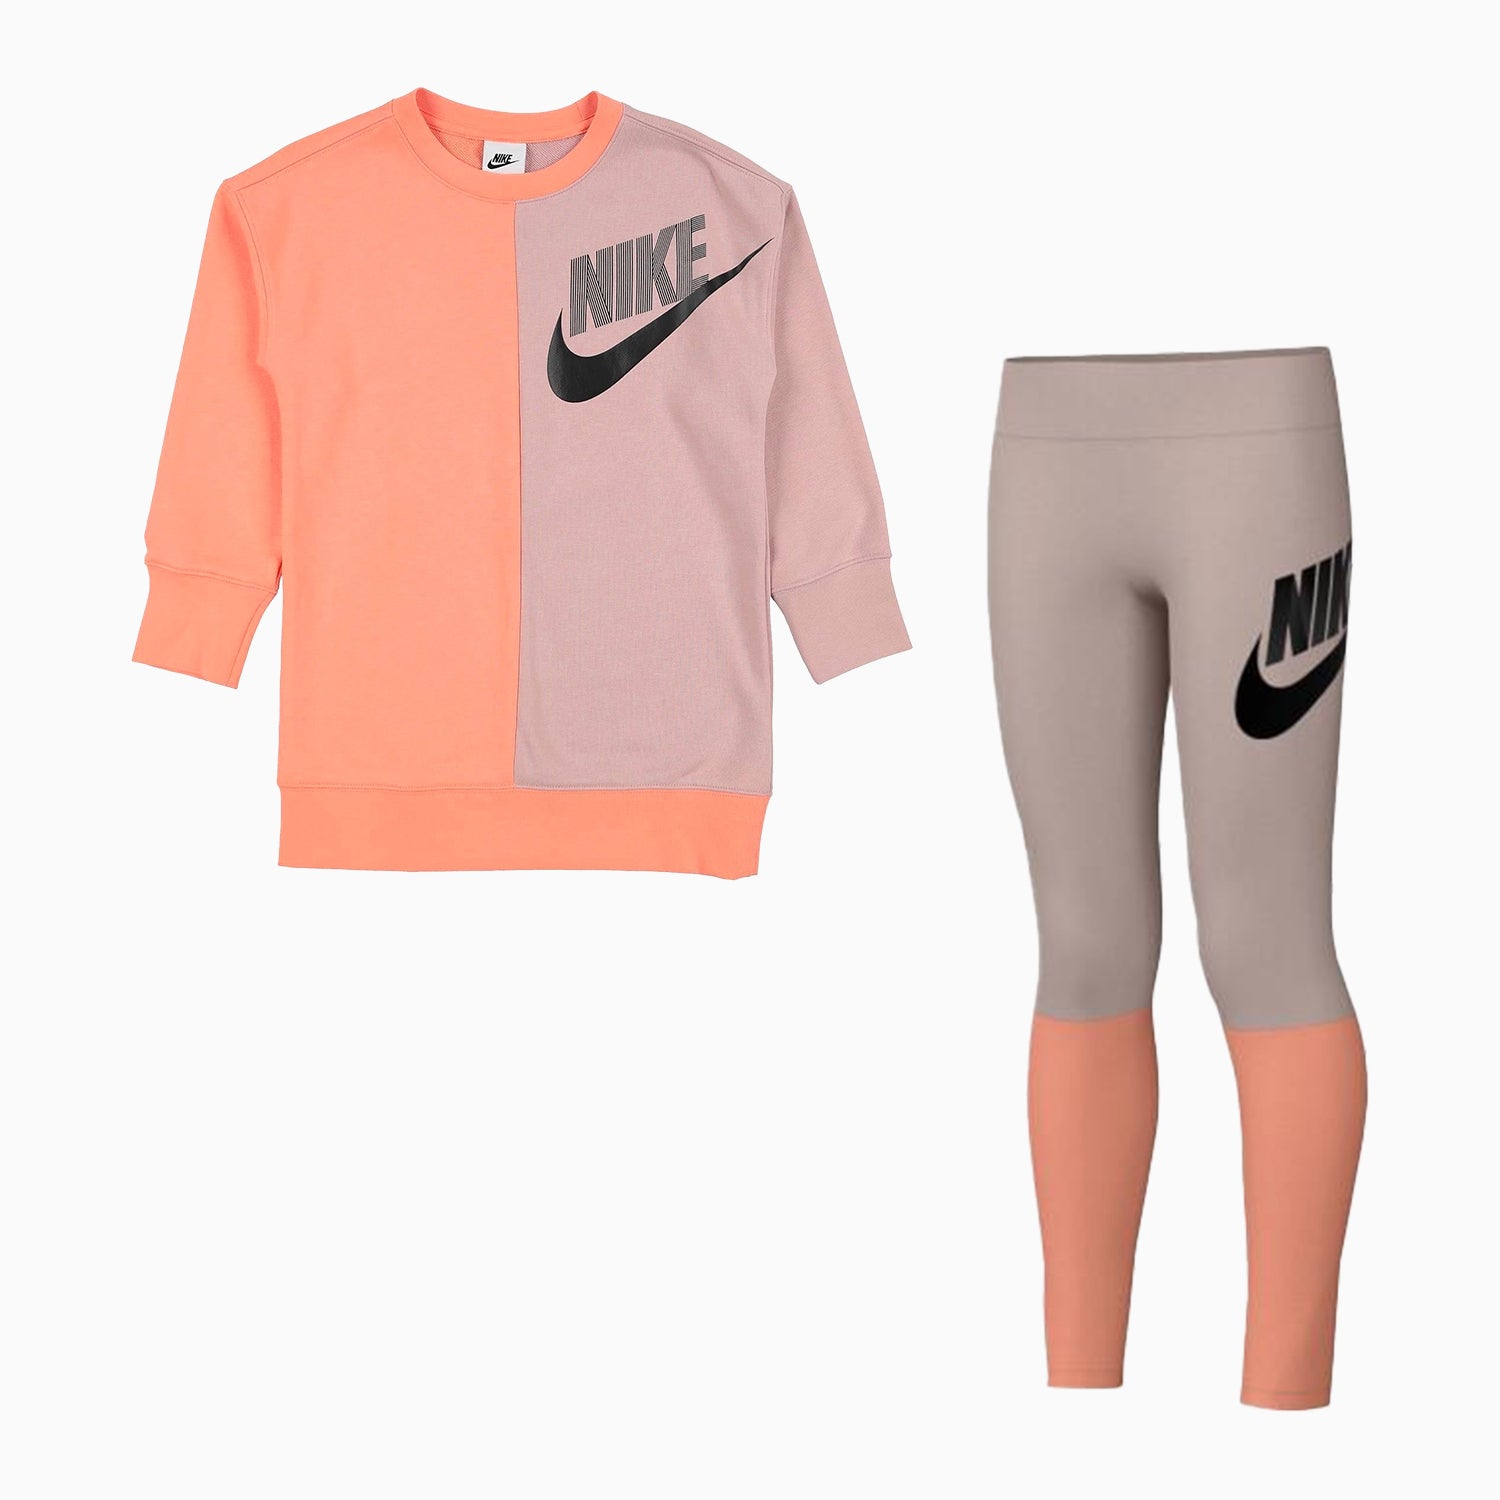 Kid's Nike Sportswear Dance Outfit